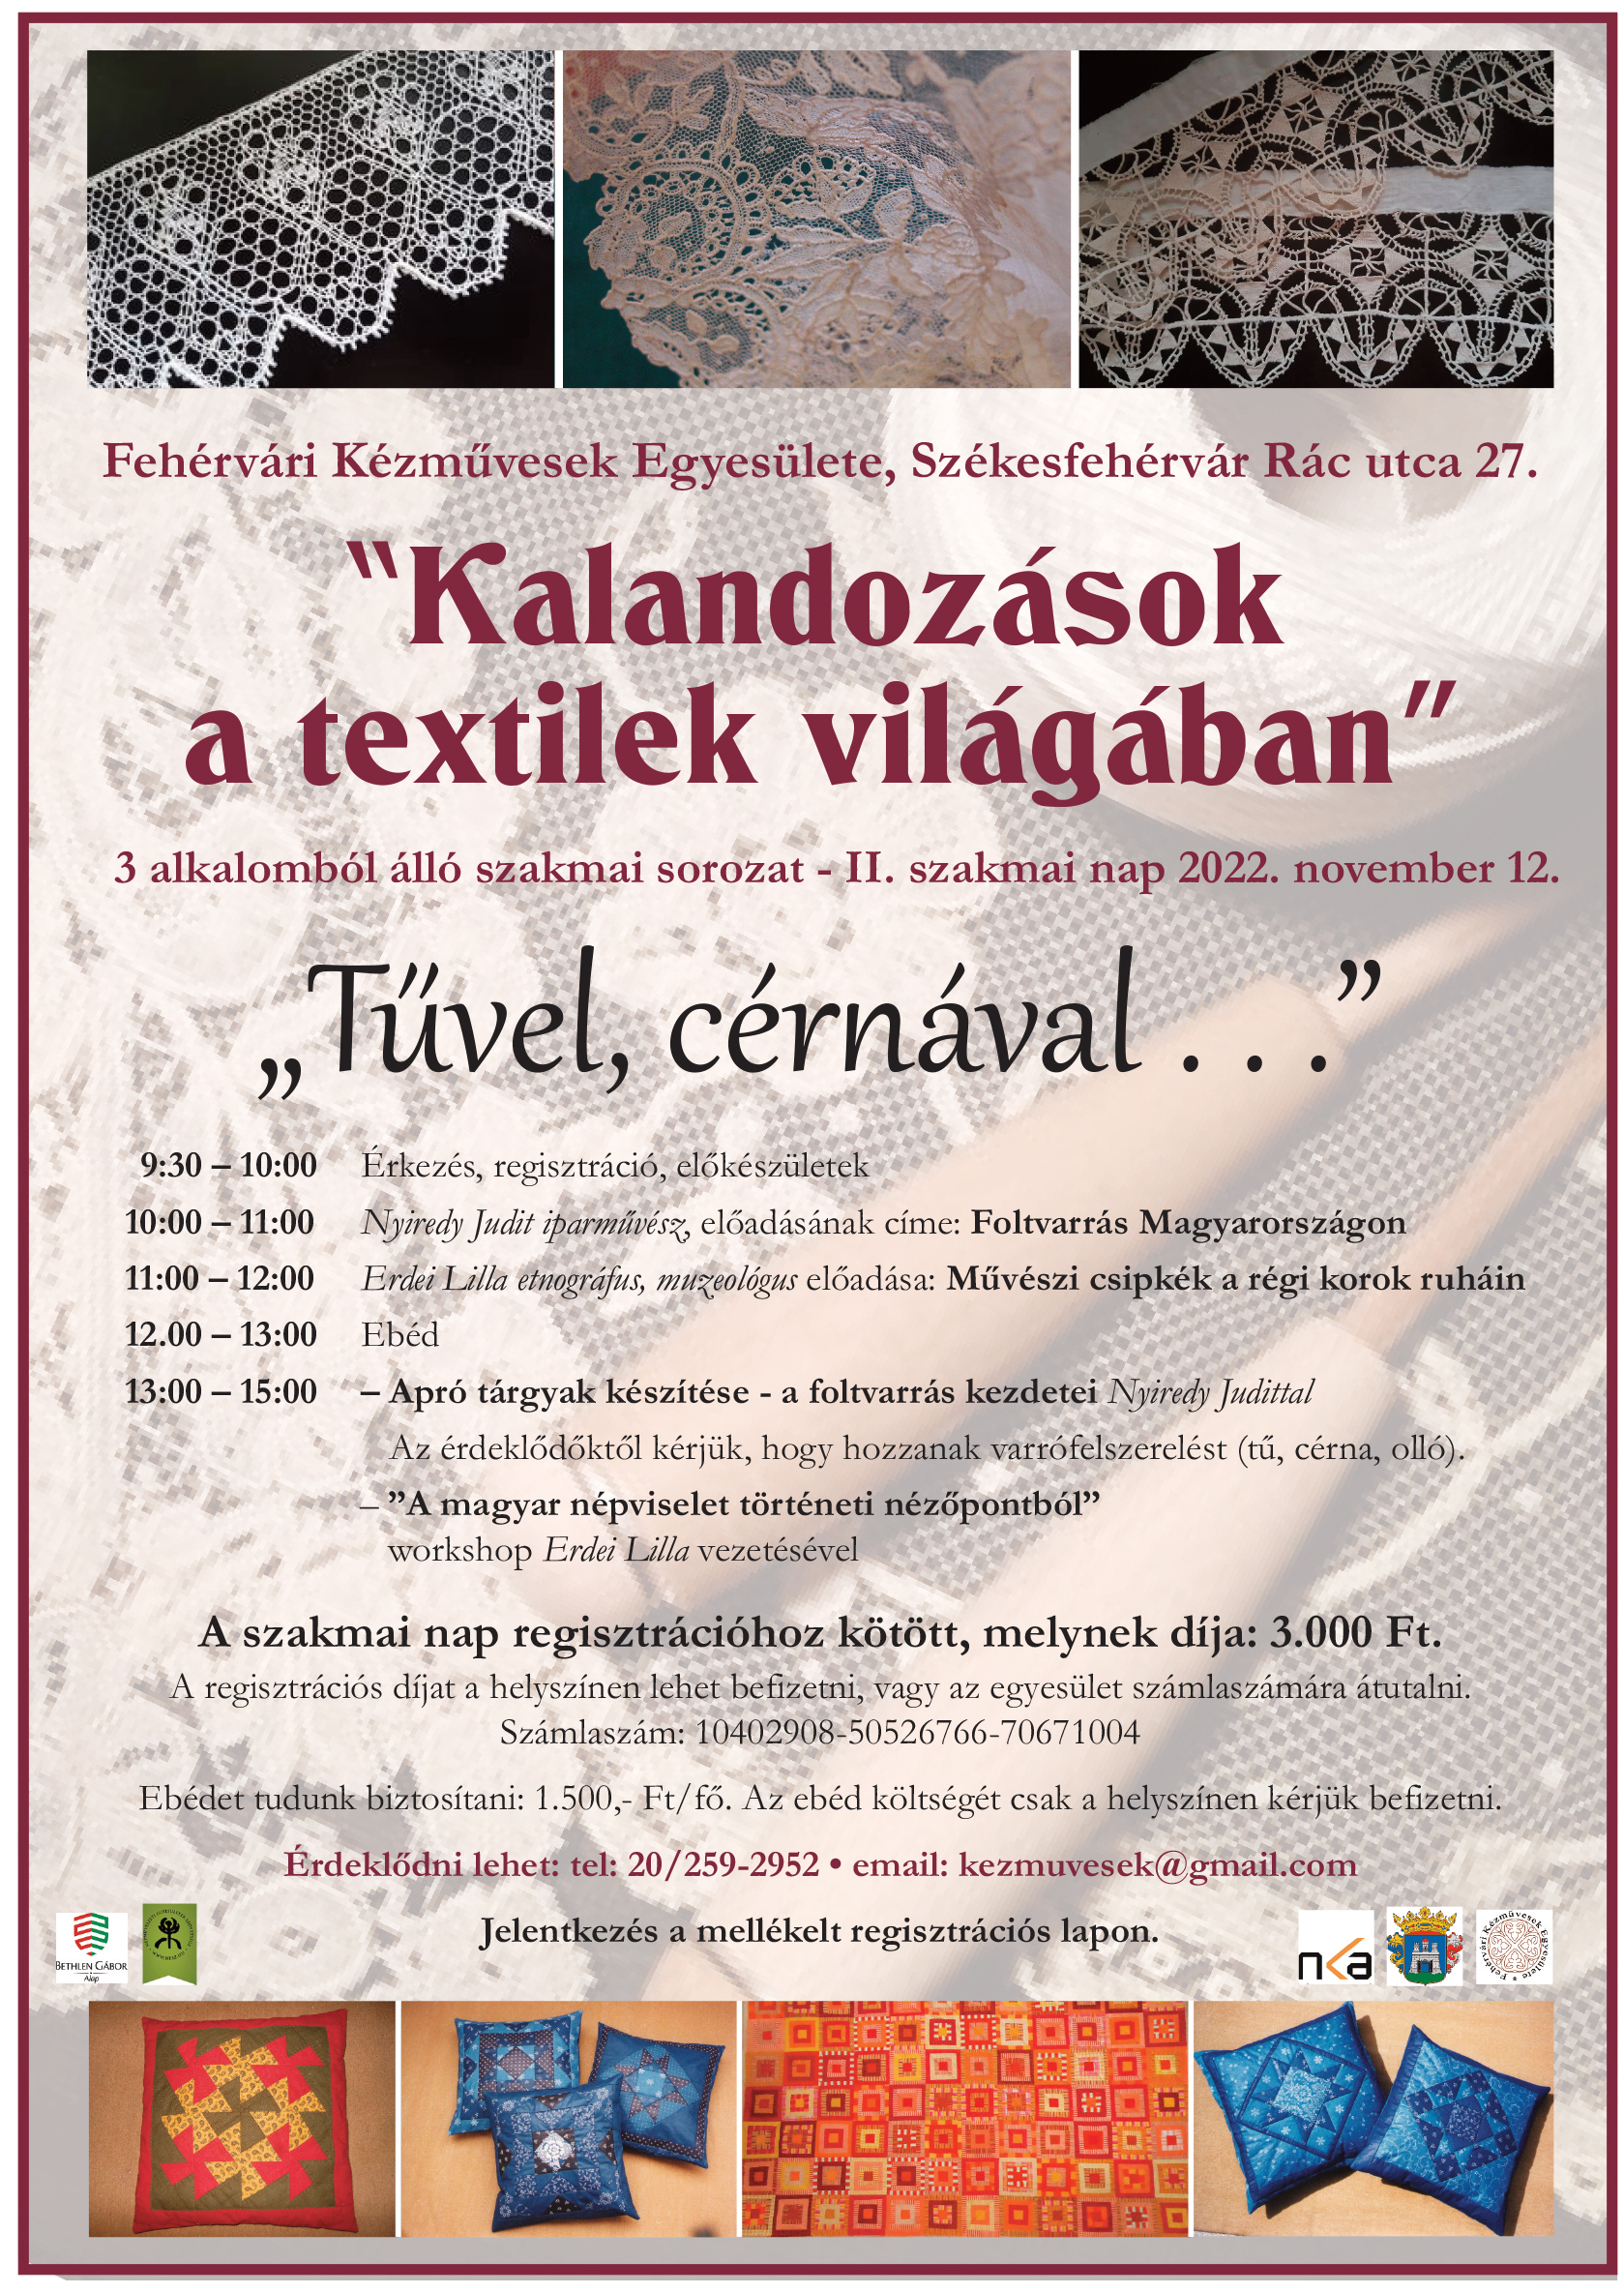 Szombaton textiles szakmai nap, vasárnap gyerek alkotónap a fehérvári kézművesekkel